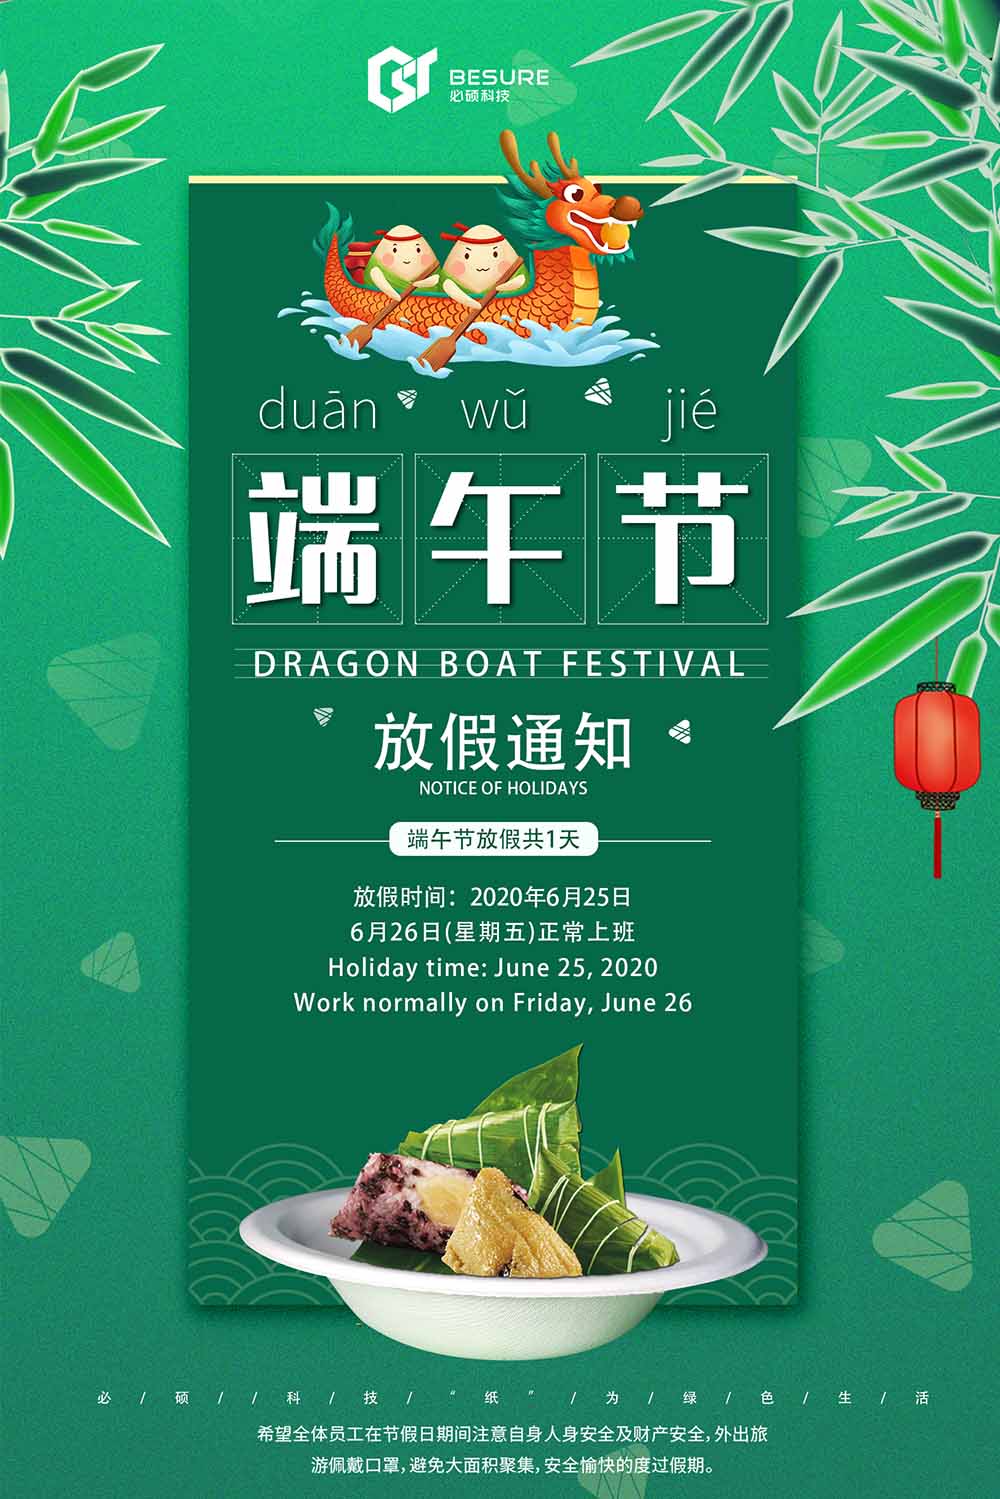 Dragon Boat Festival: "Zong" ama los envases verdes, la vida de Ankang comienza con la protección del medio ambiente